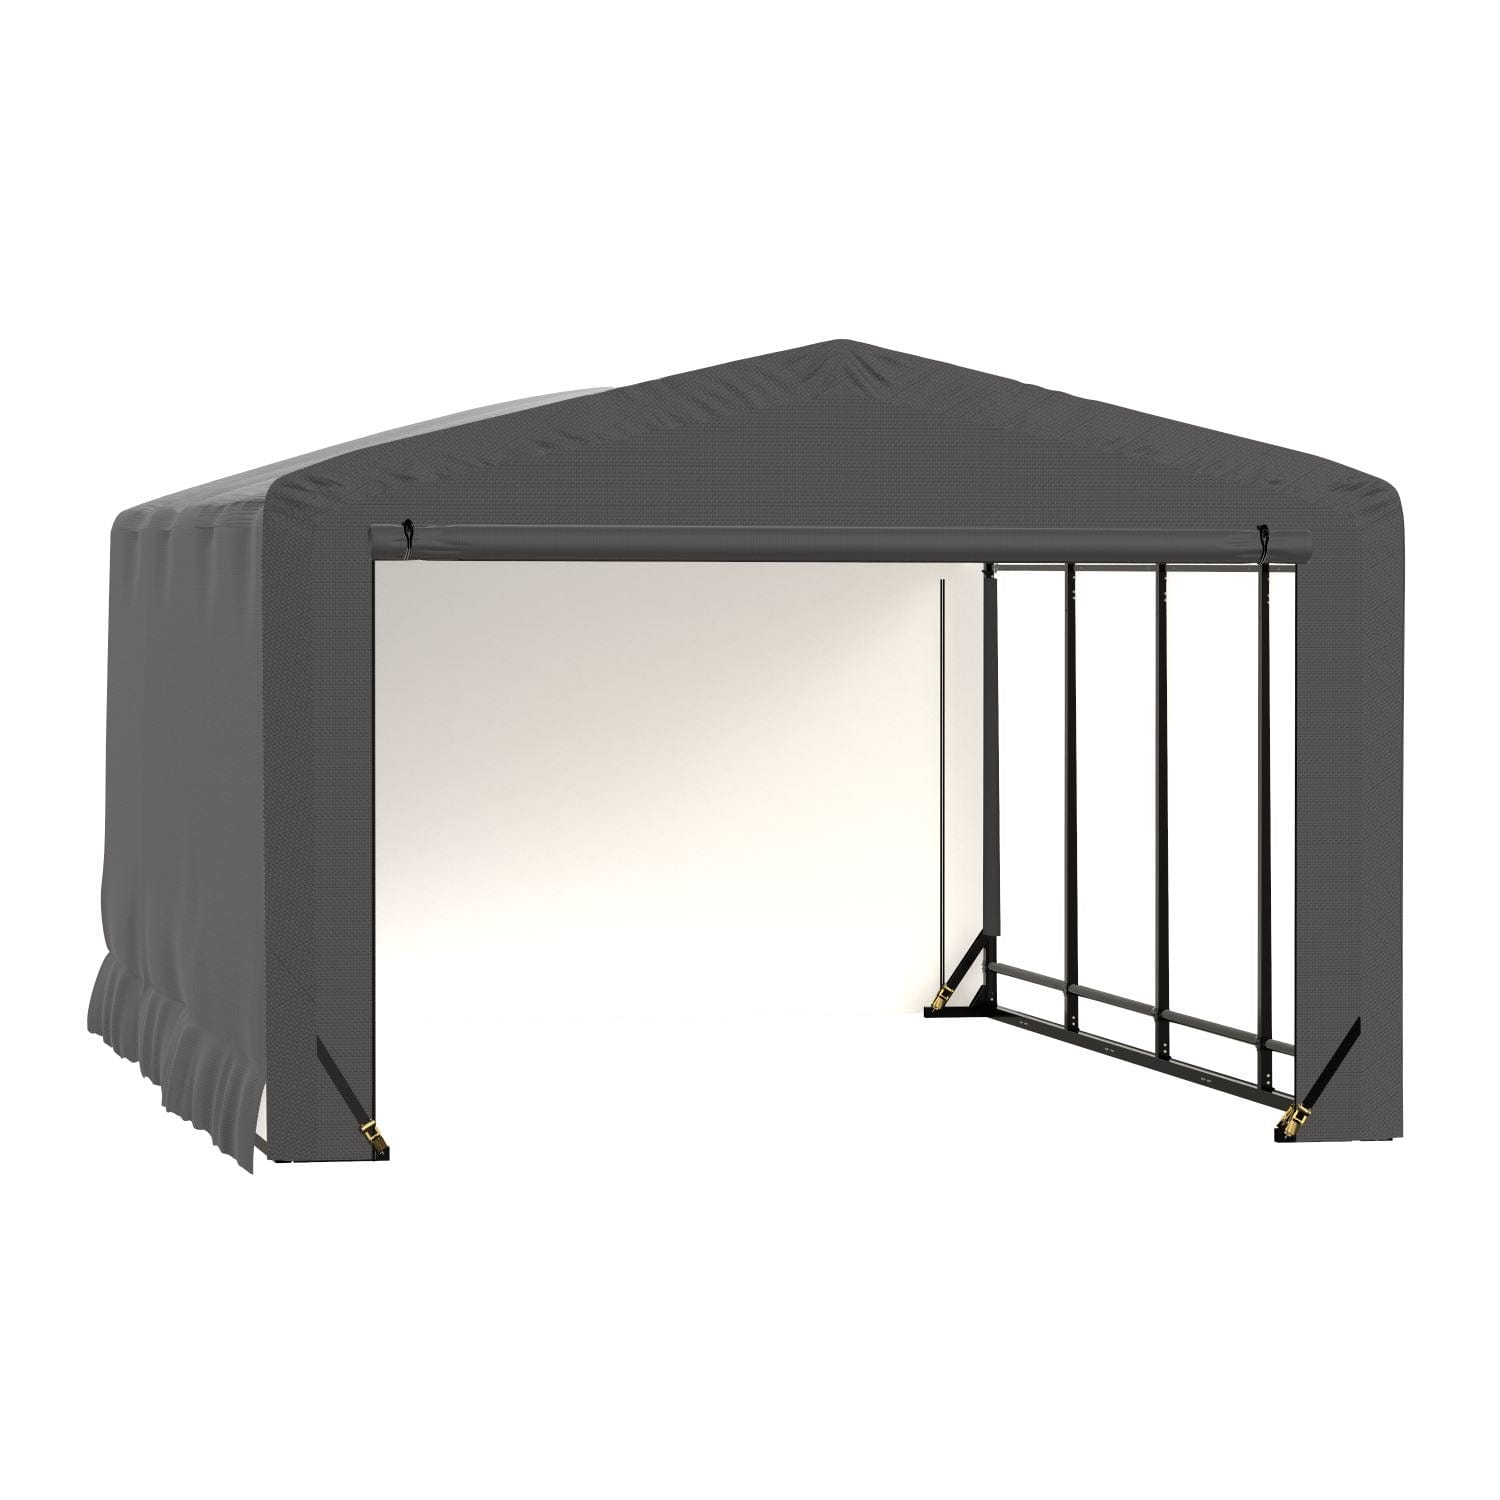 ShelterLogic Portable Garage ShelterLogic | ShelterTube Wind and Snow-Load Rated Garage 12x18x8 Gray SQAACC0103C01201808